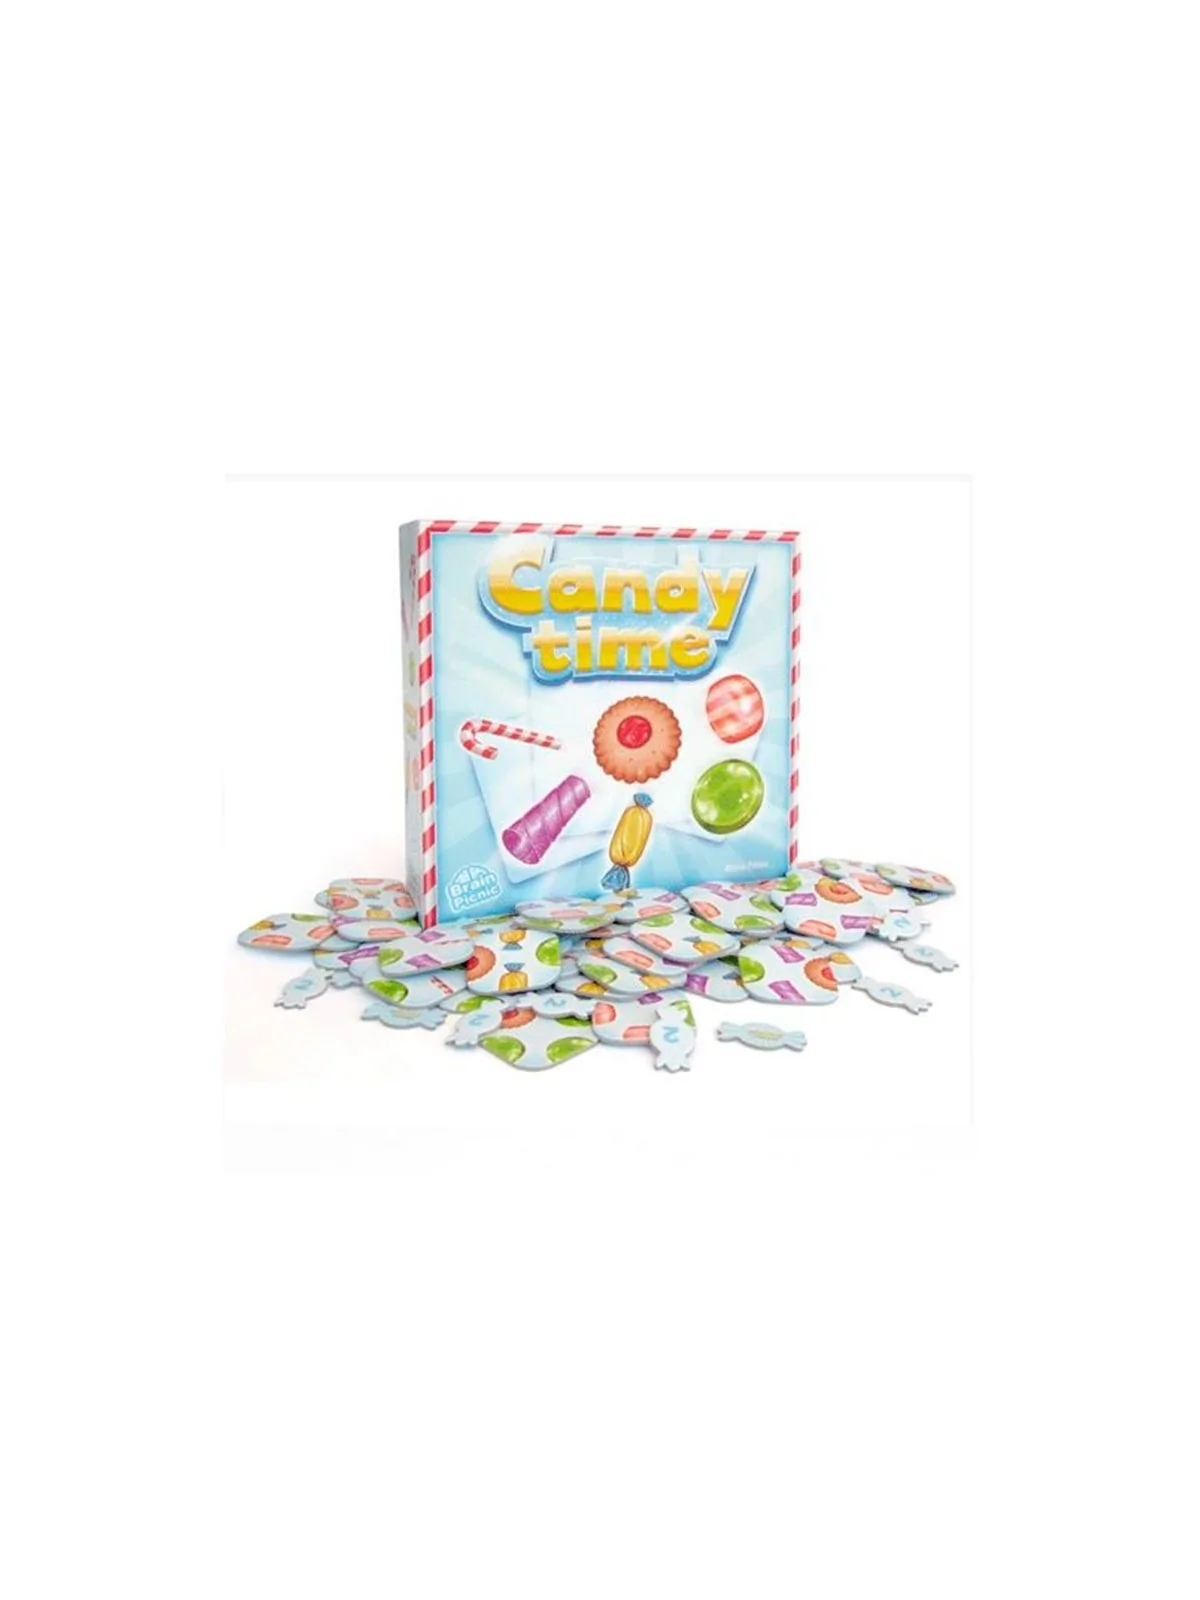 Comprar Candy Time barato al mejor precio 11,65 € de Zacatrus